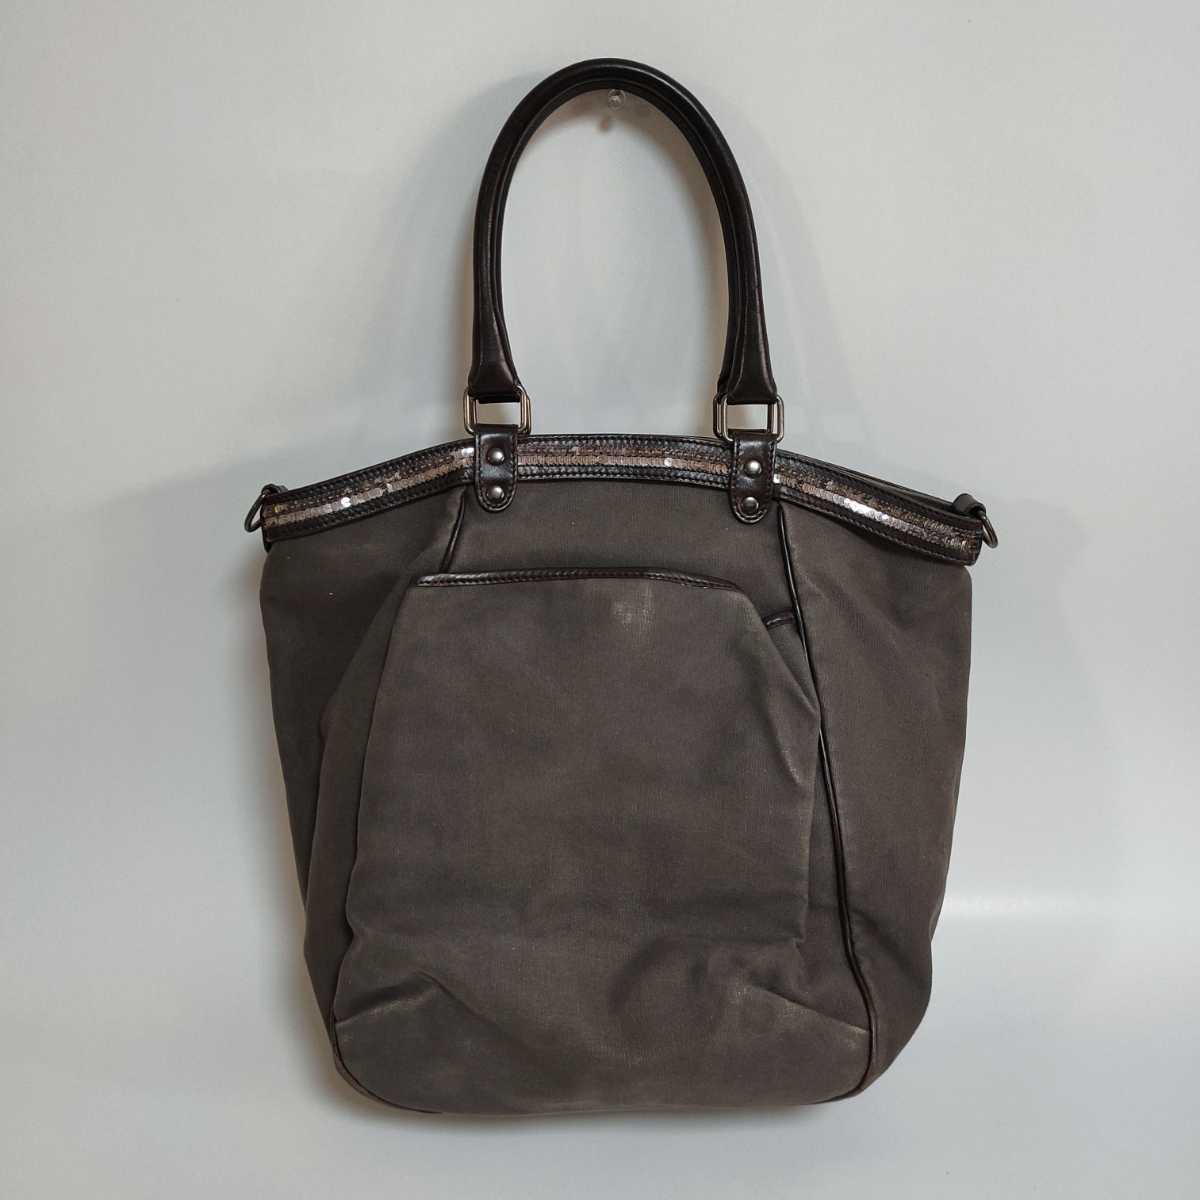  прекрасный товар Vanessa Bruno украшен блестками имеется большая сумка хаки натуральная кожа 